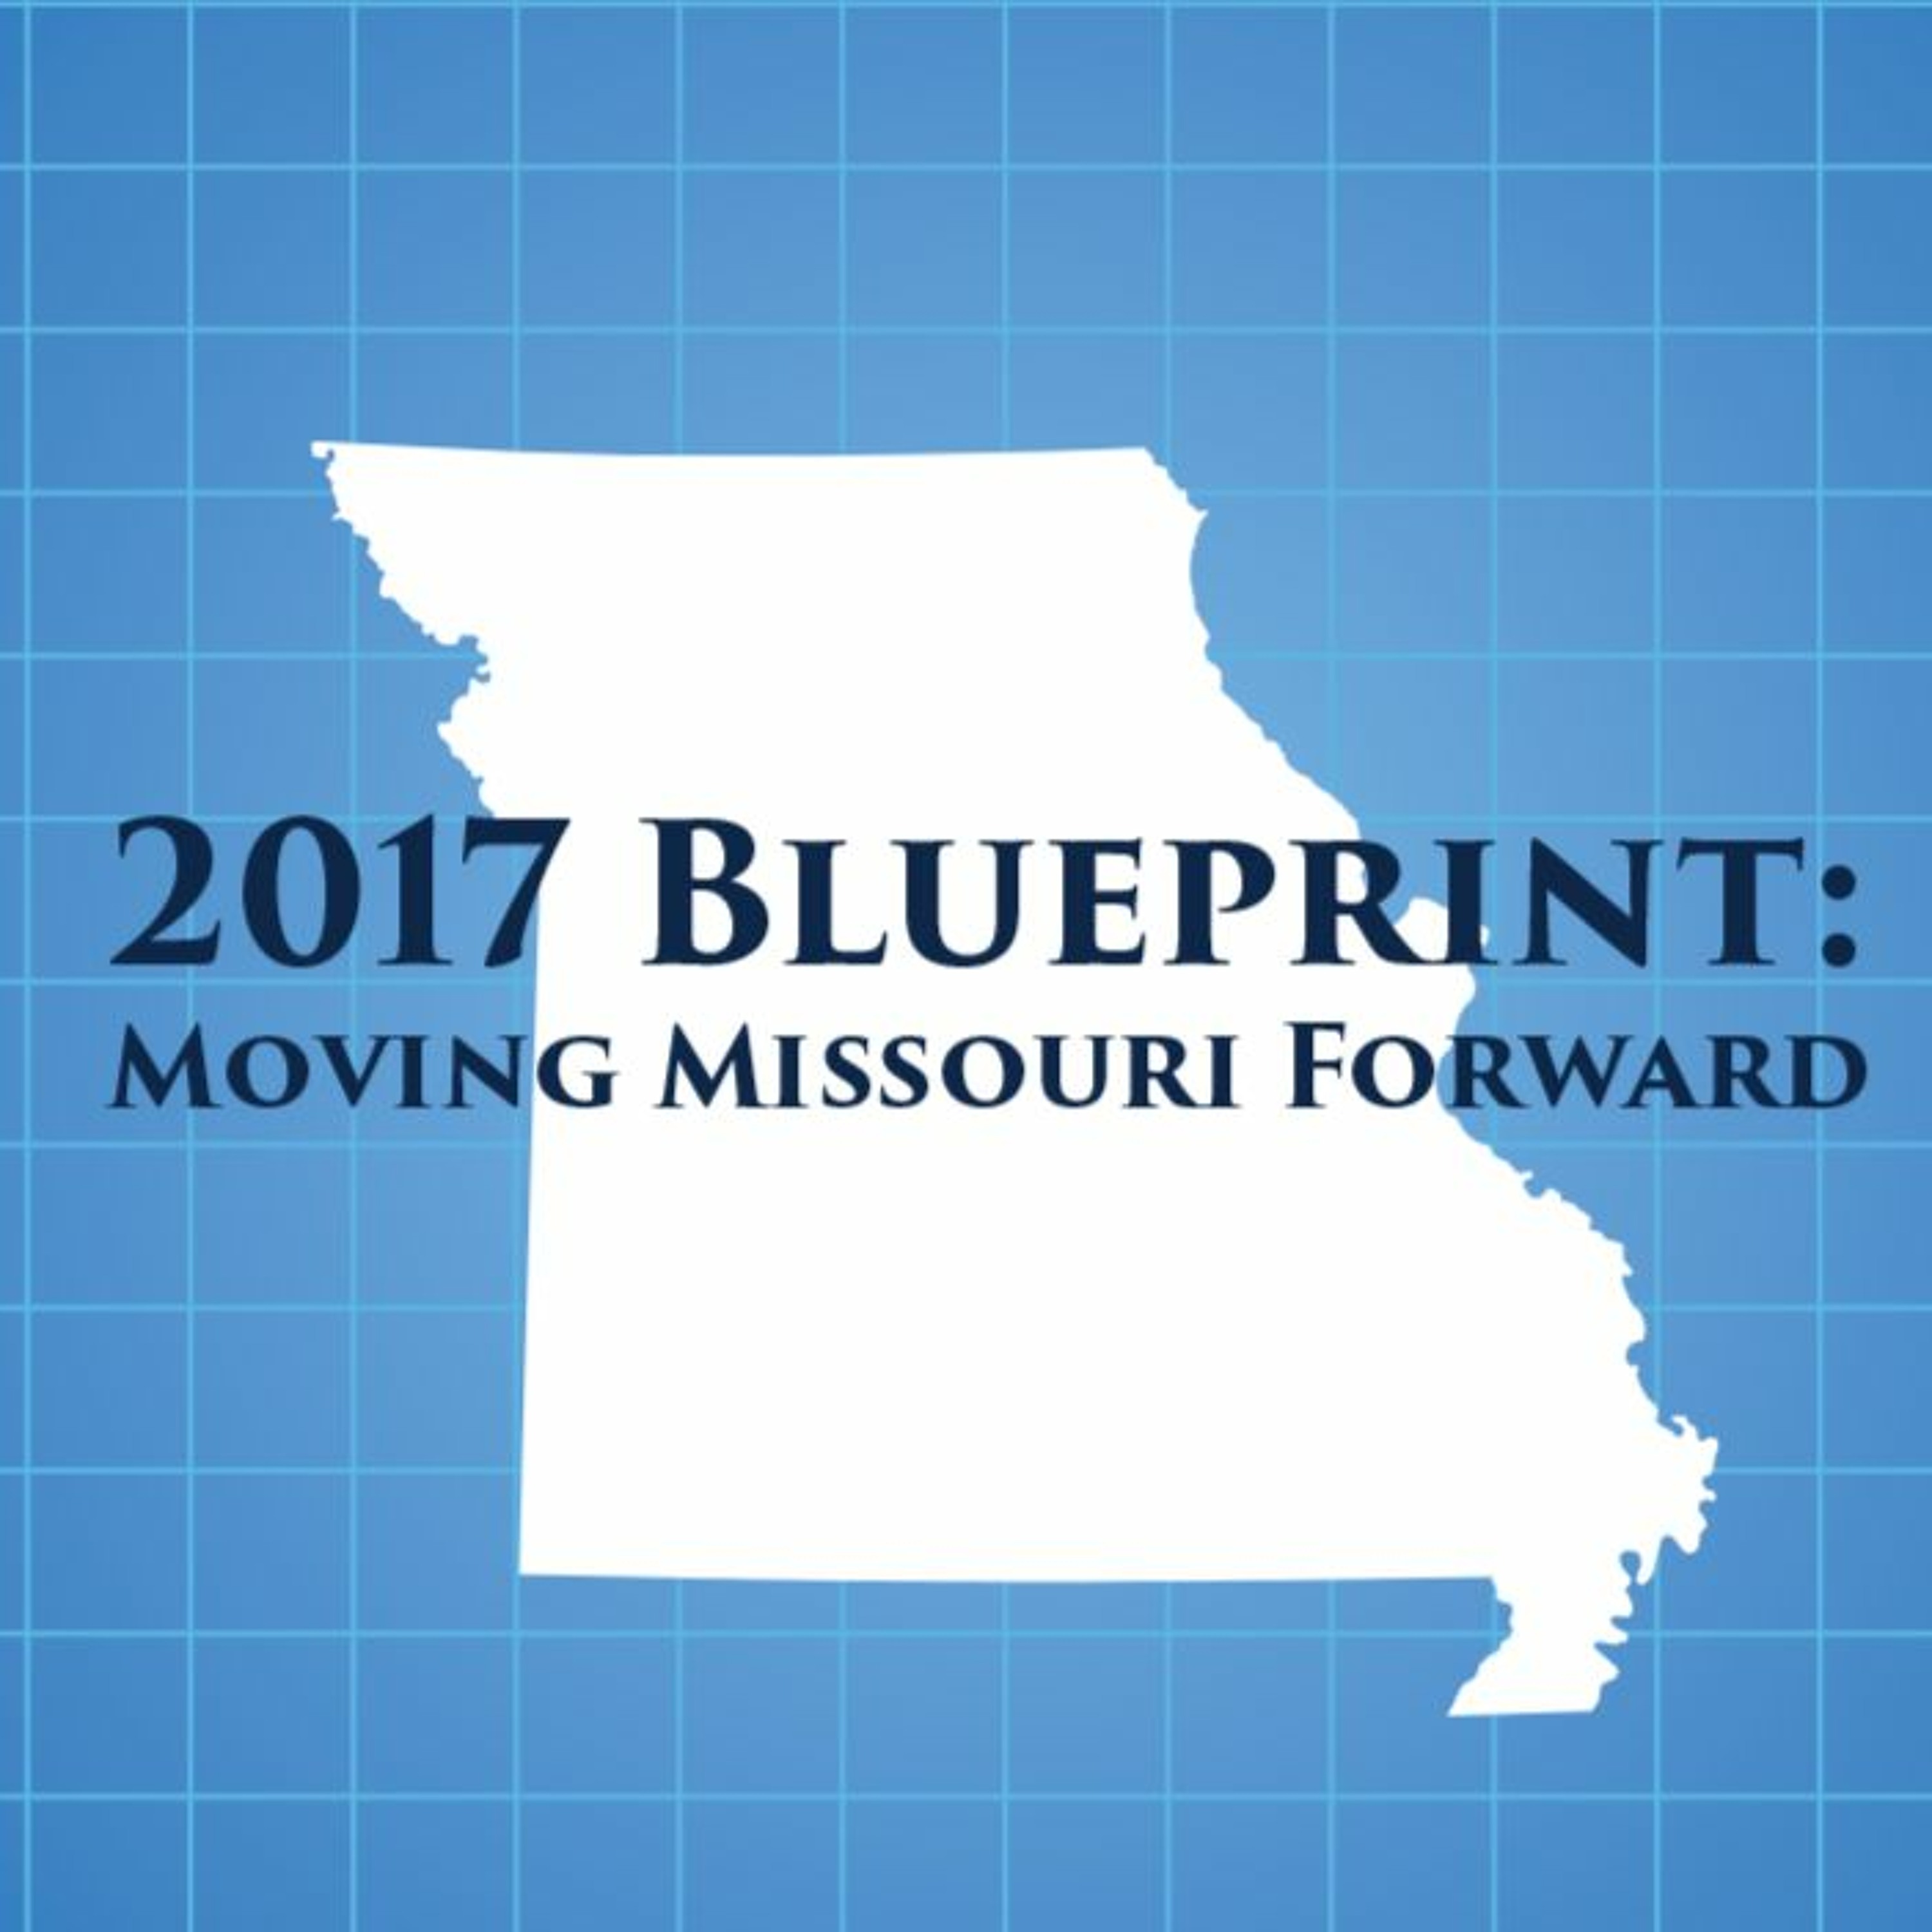 KZIM-KSIM: Blueprint for Missouri